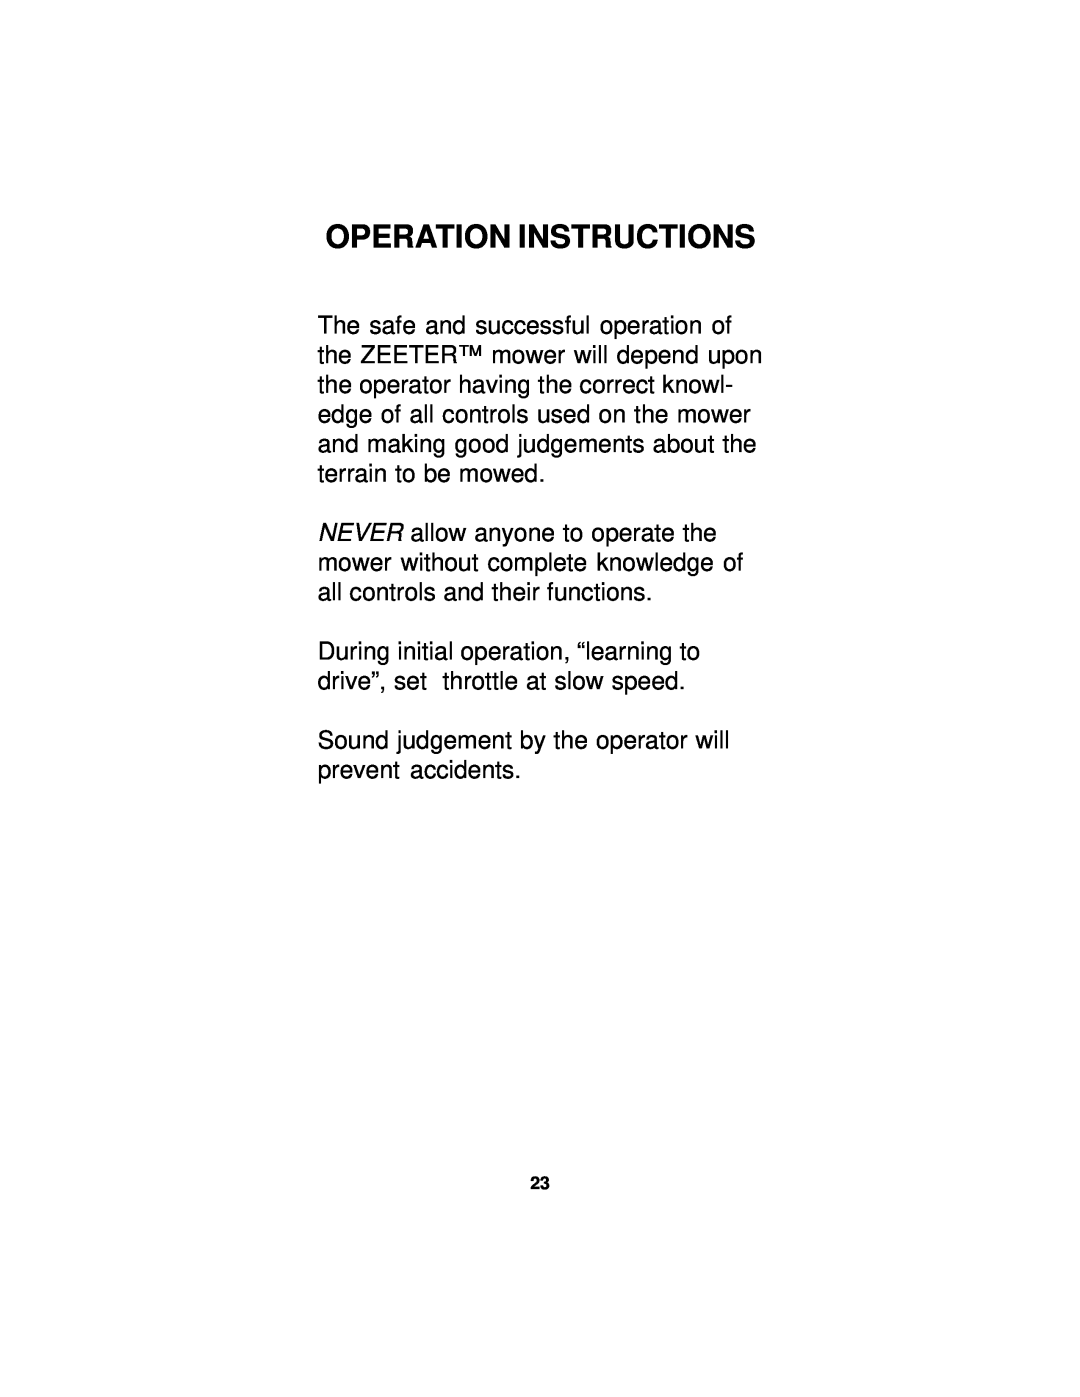 Dixon 14295-0804 manual Operation Instructions 